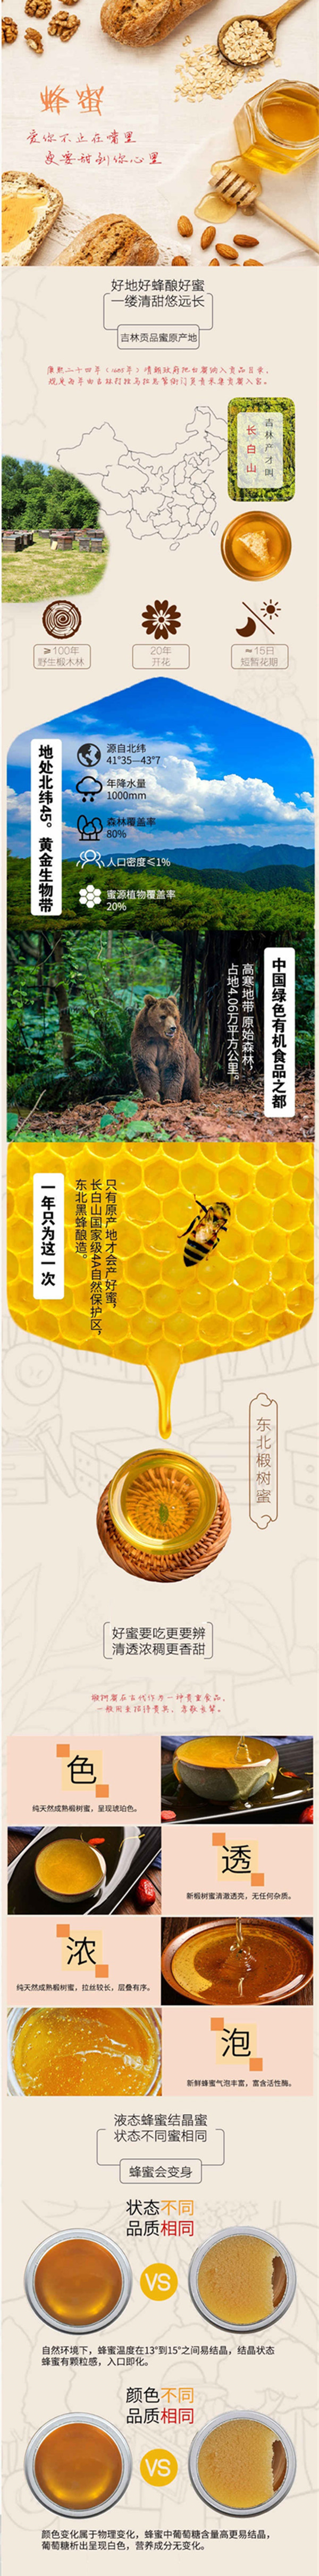 三河站 【吉林邮政】【东北特产】椴树蜜80g 蜂蜜 每盒8小包【邮储】